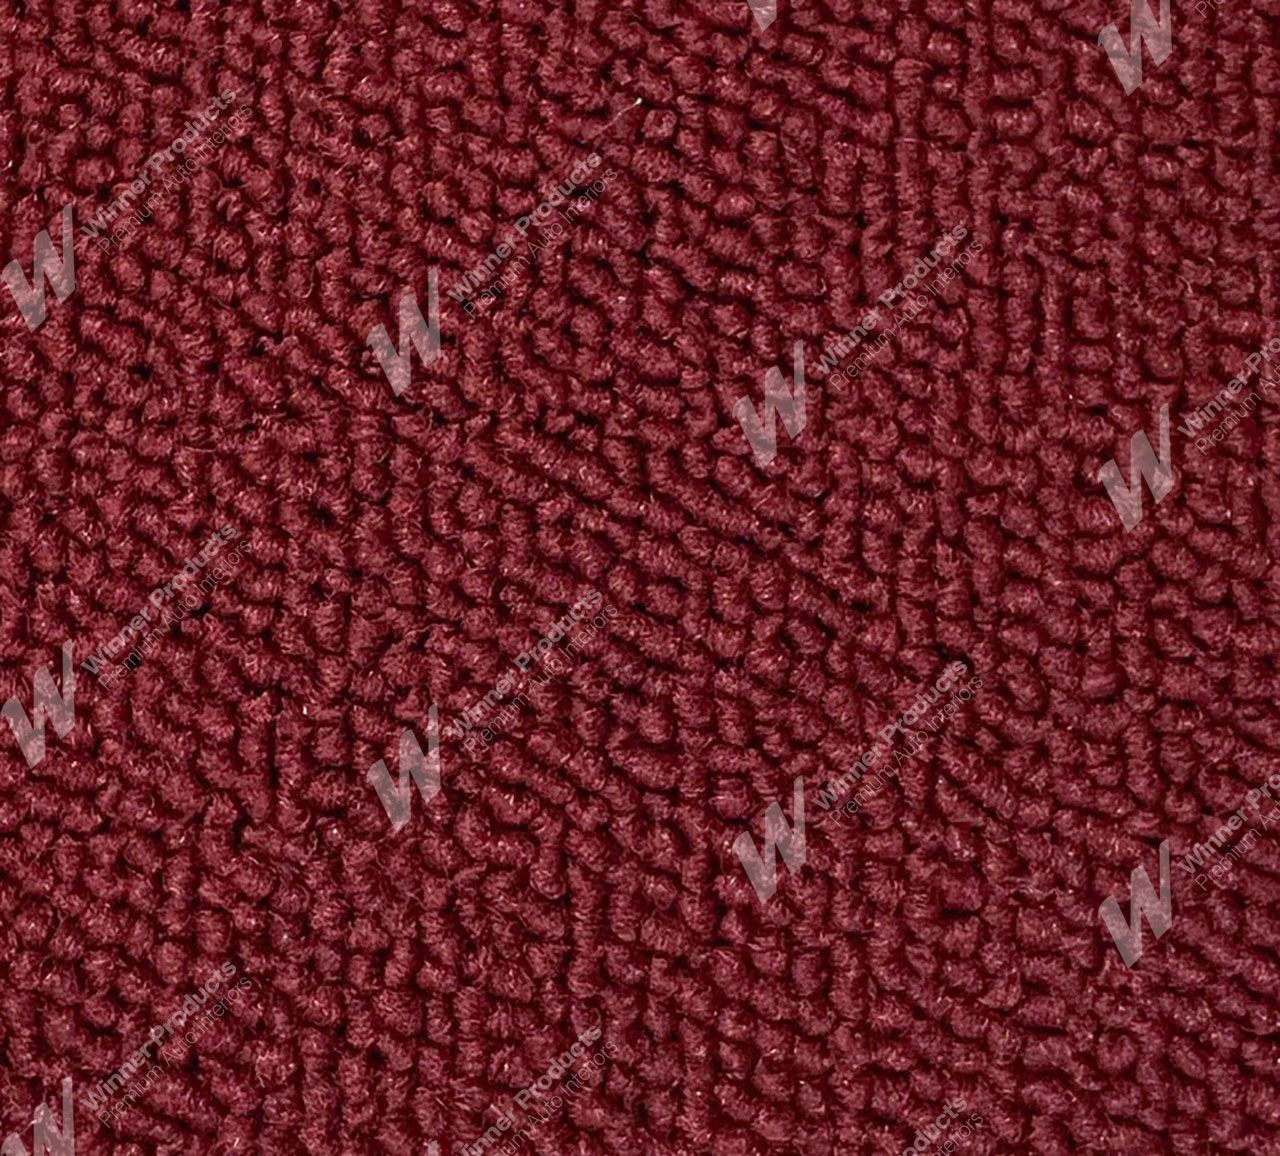 Holden Premier HK Premier Wagon 12S Yulunga Maroon & Castillion Weave Carpet (Image 1 of 1)